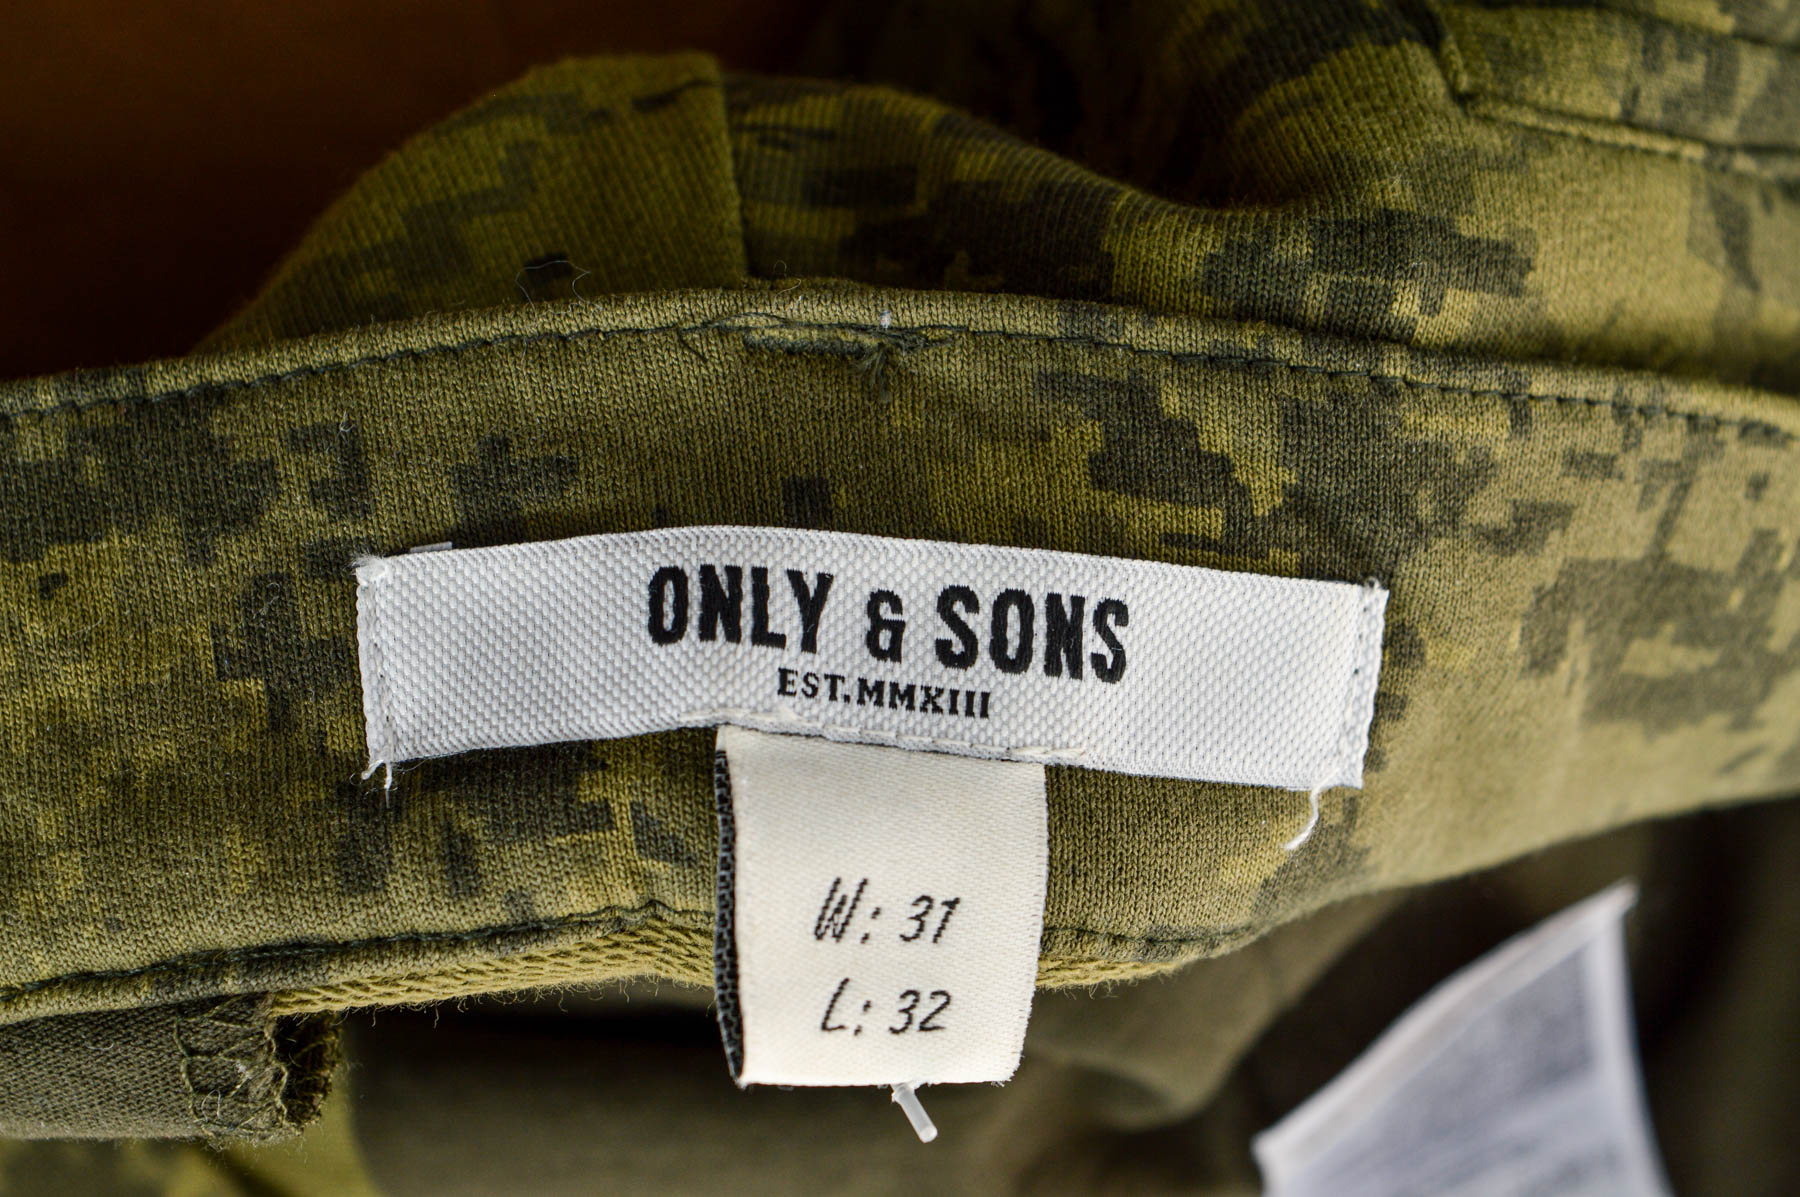 Pantalon pentru bărbați - ONLY & SONS - 2